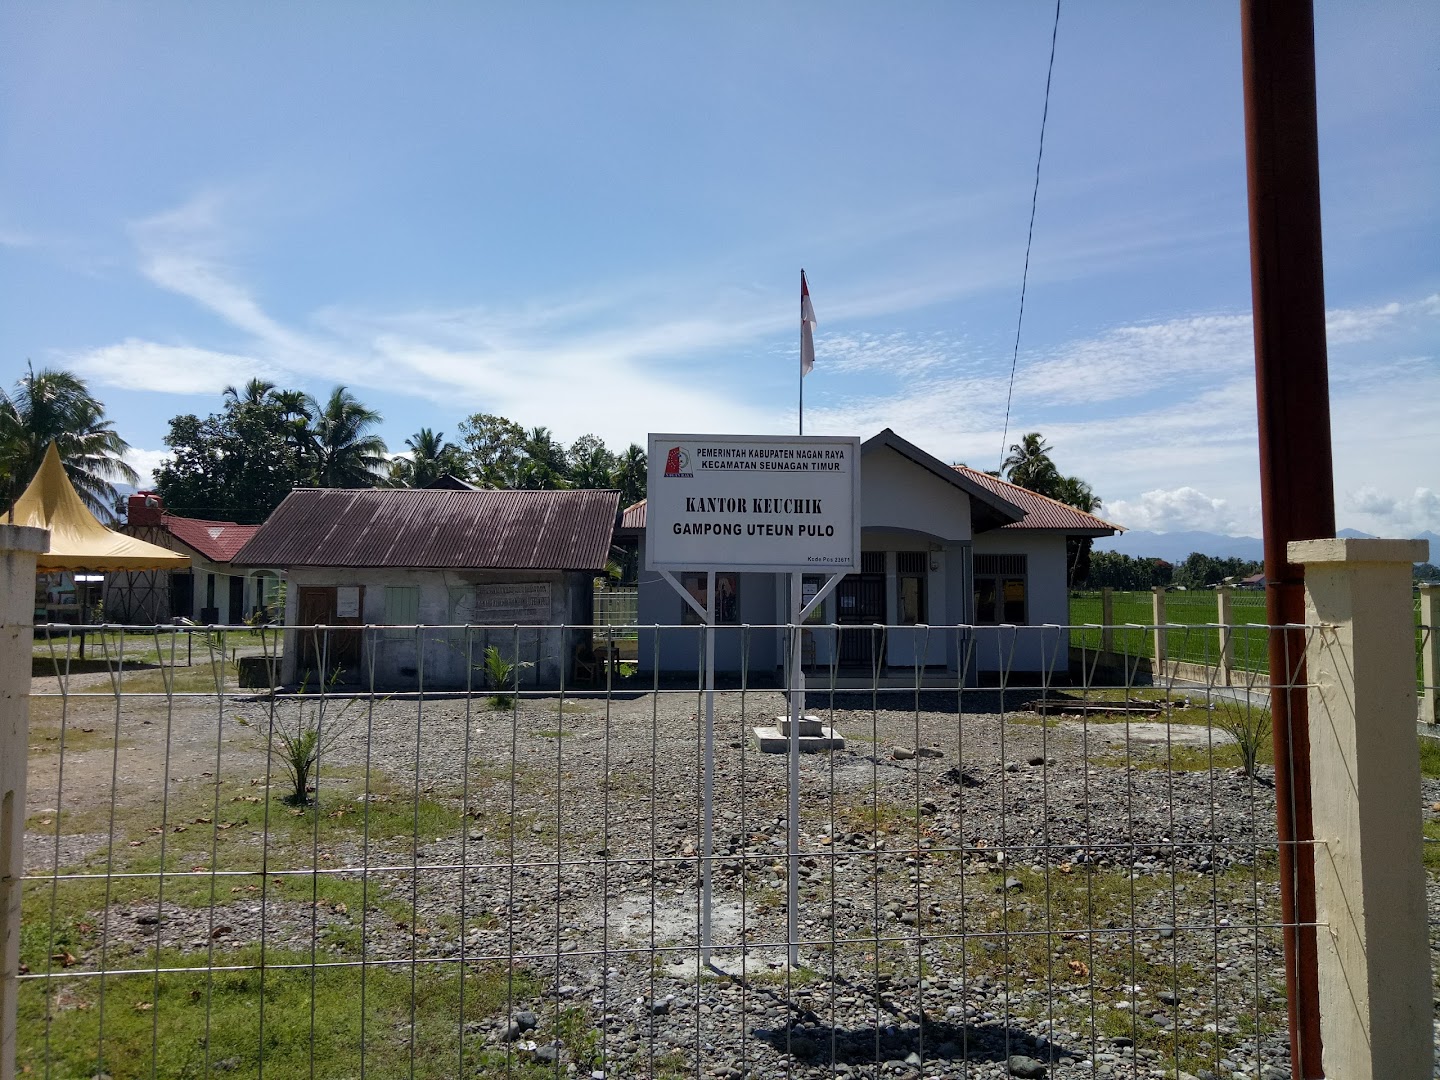 Kantor Keuchiek Gampong Uteun Pulo Photo